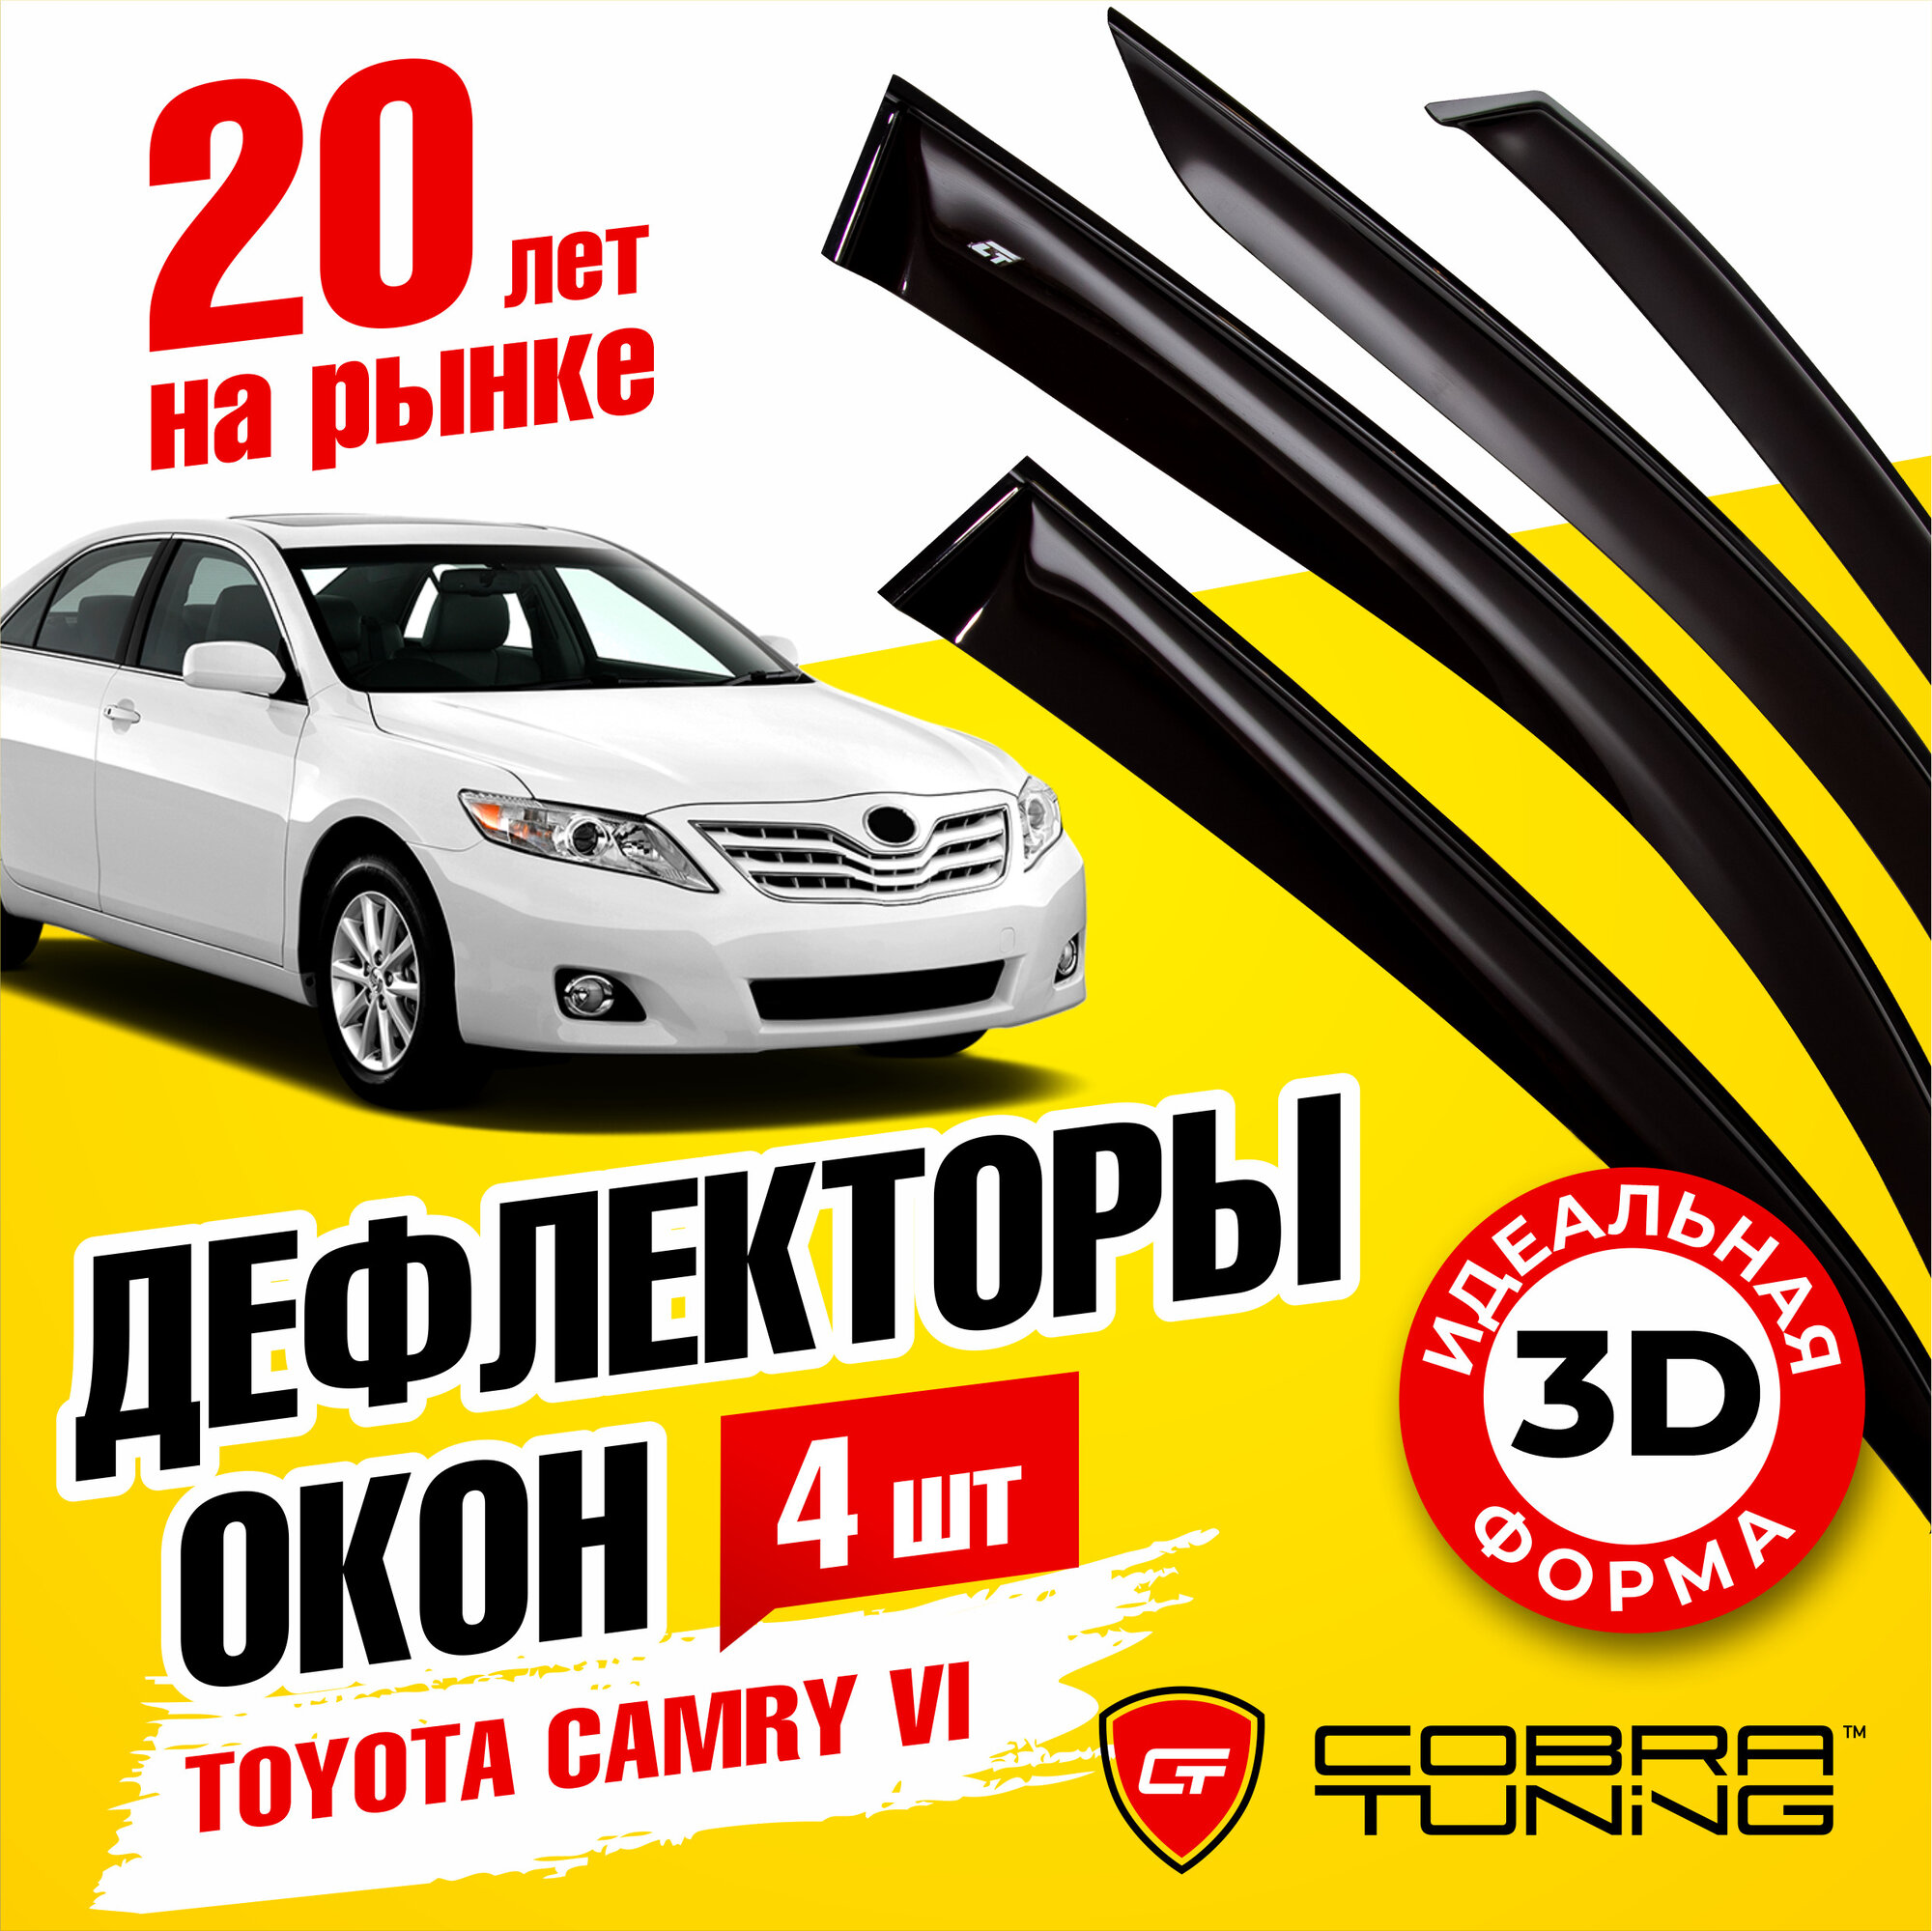 Дефлекторы боковых окон для Toyota Camry 6 (Тойота Камри) 40 кузов седан 2006-2011, ветровики на двери автомобиля, Cobra Tuning